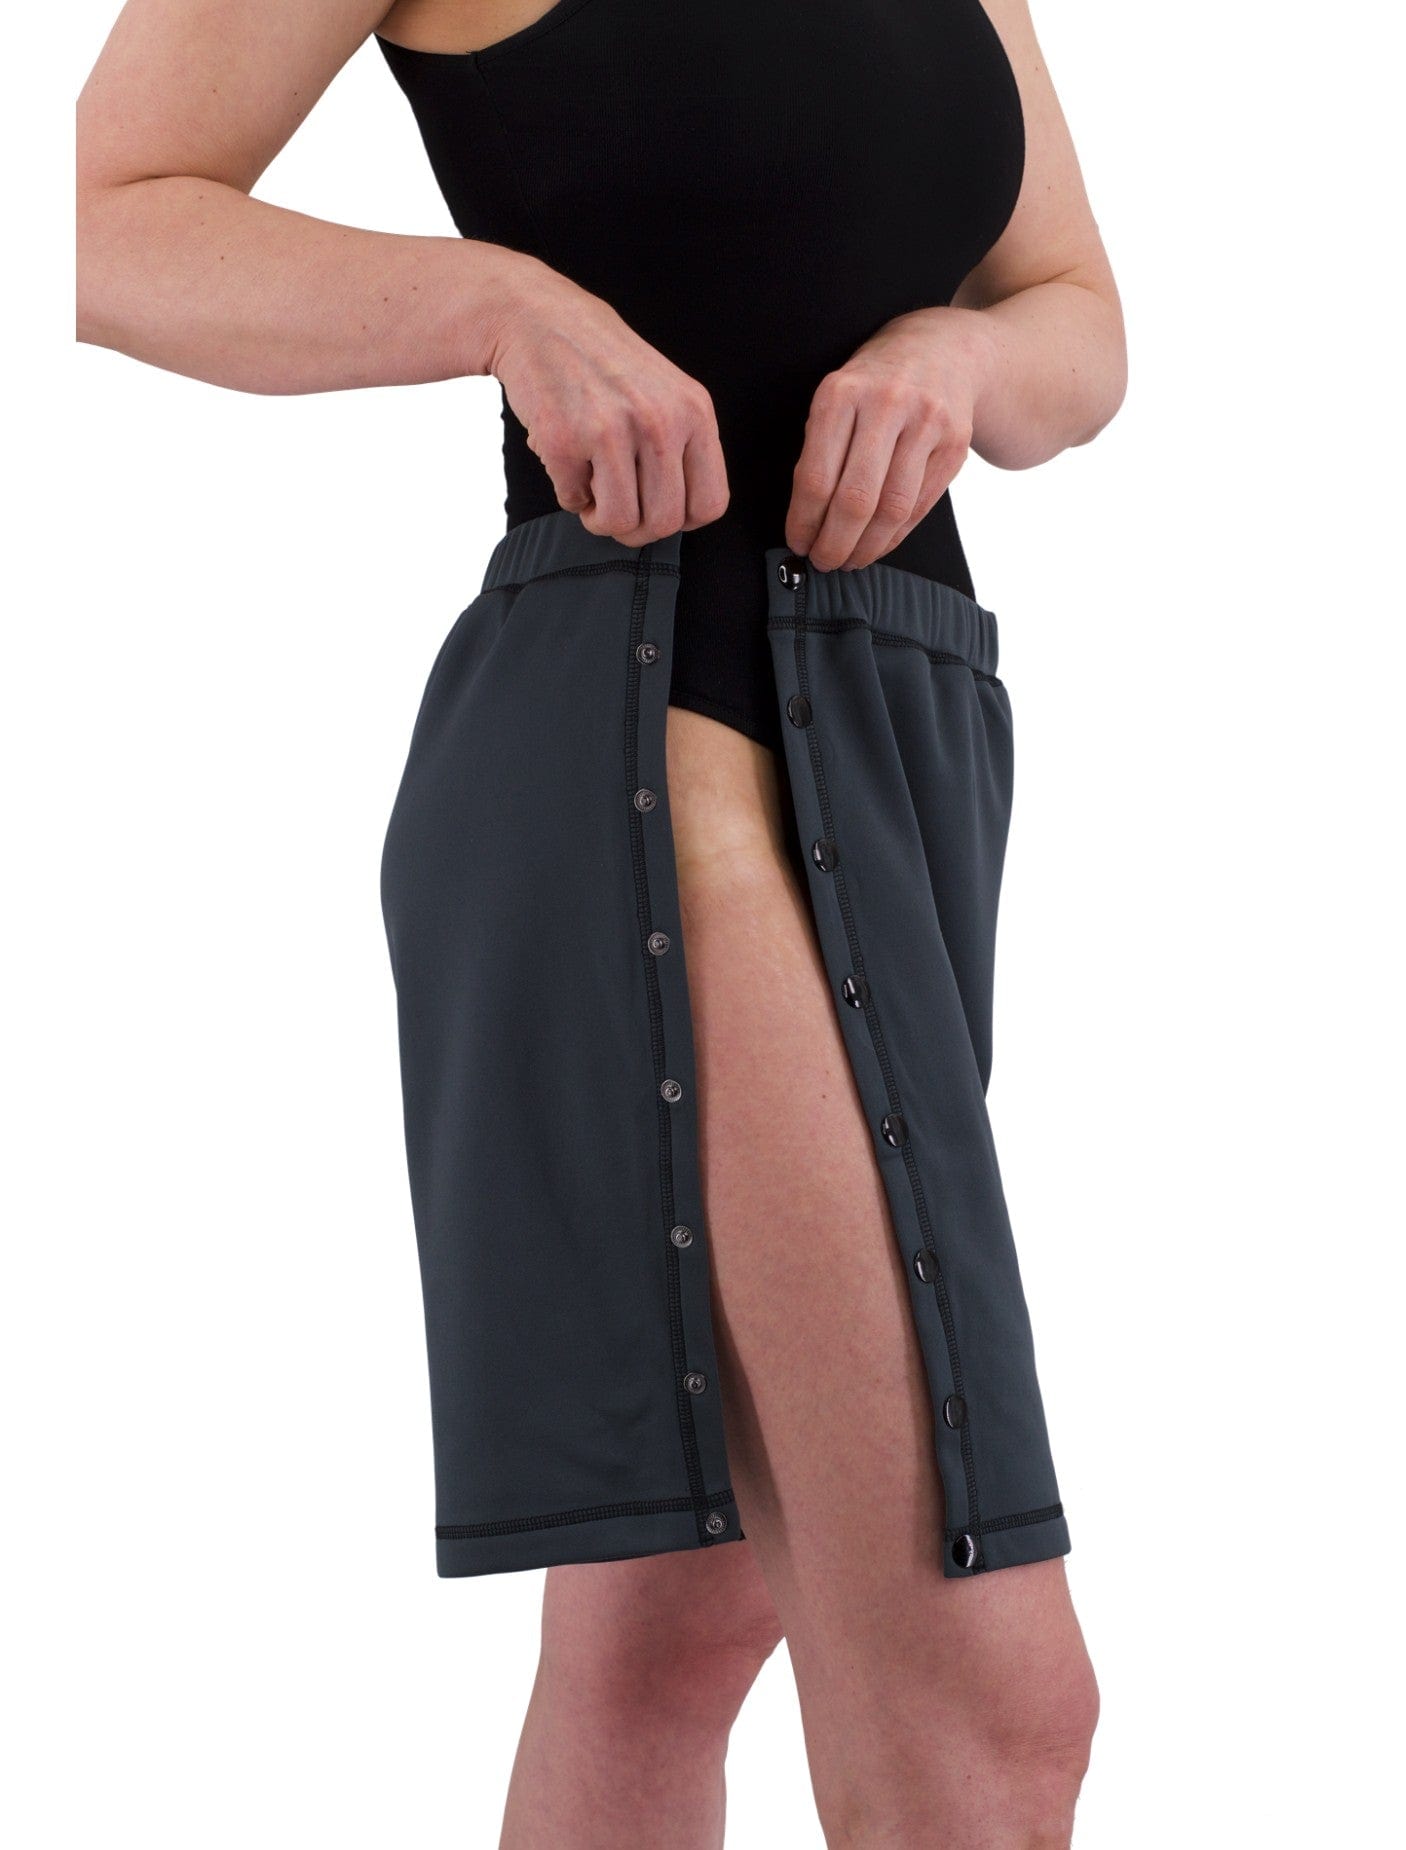 Post Surgery Tearaway Shorts Unisex Patient Hook Loop Underwear Care Panties